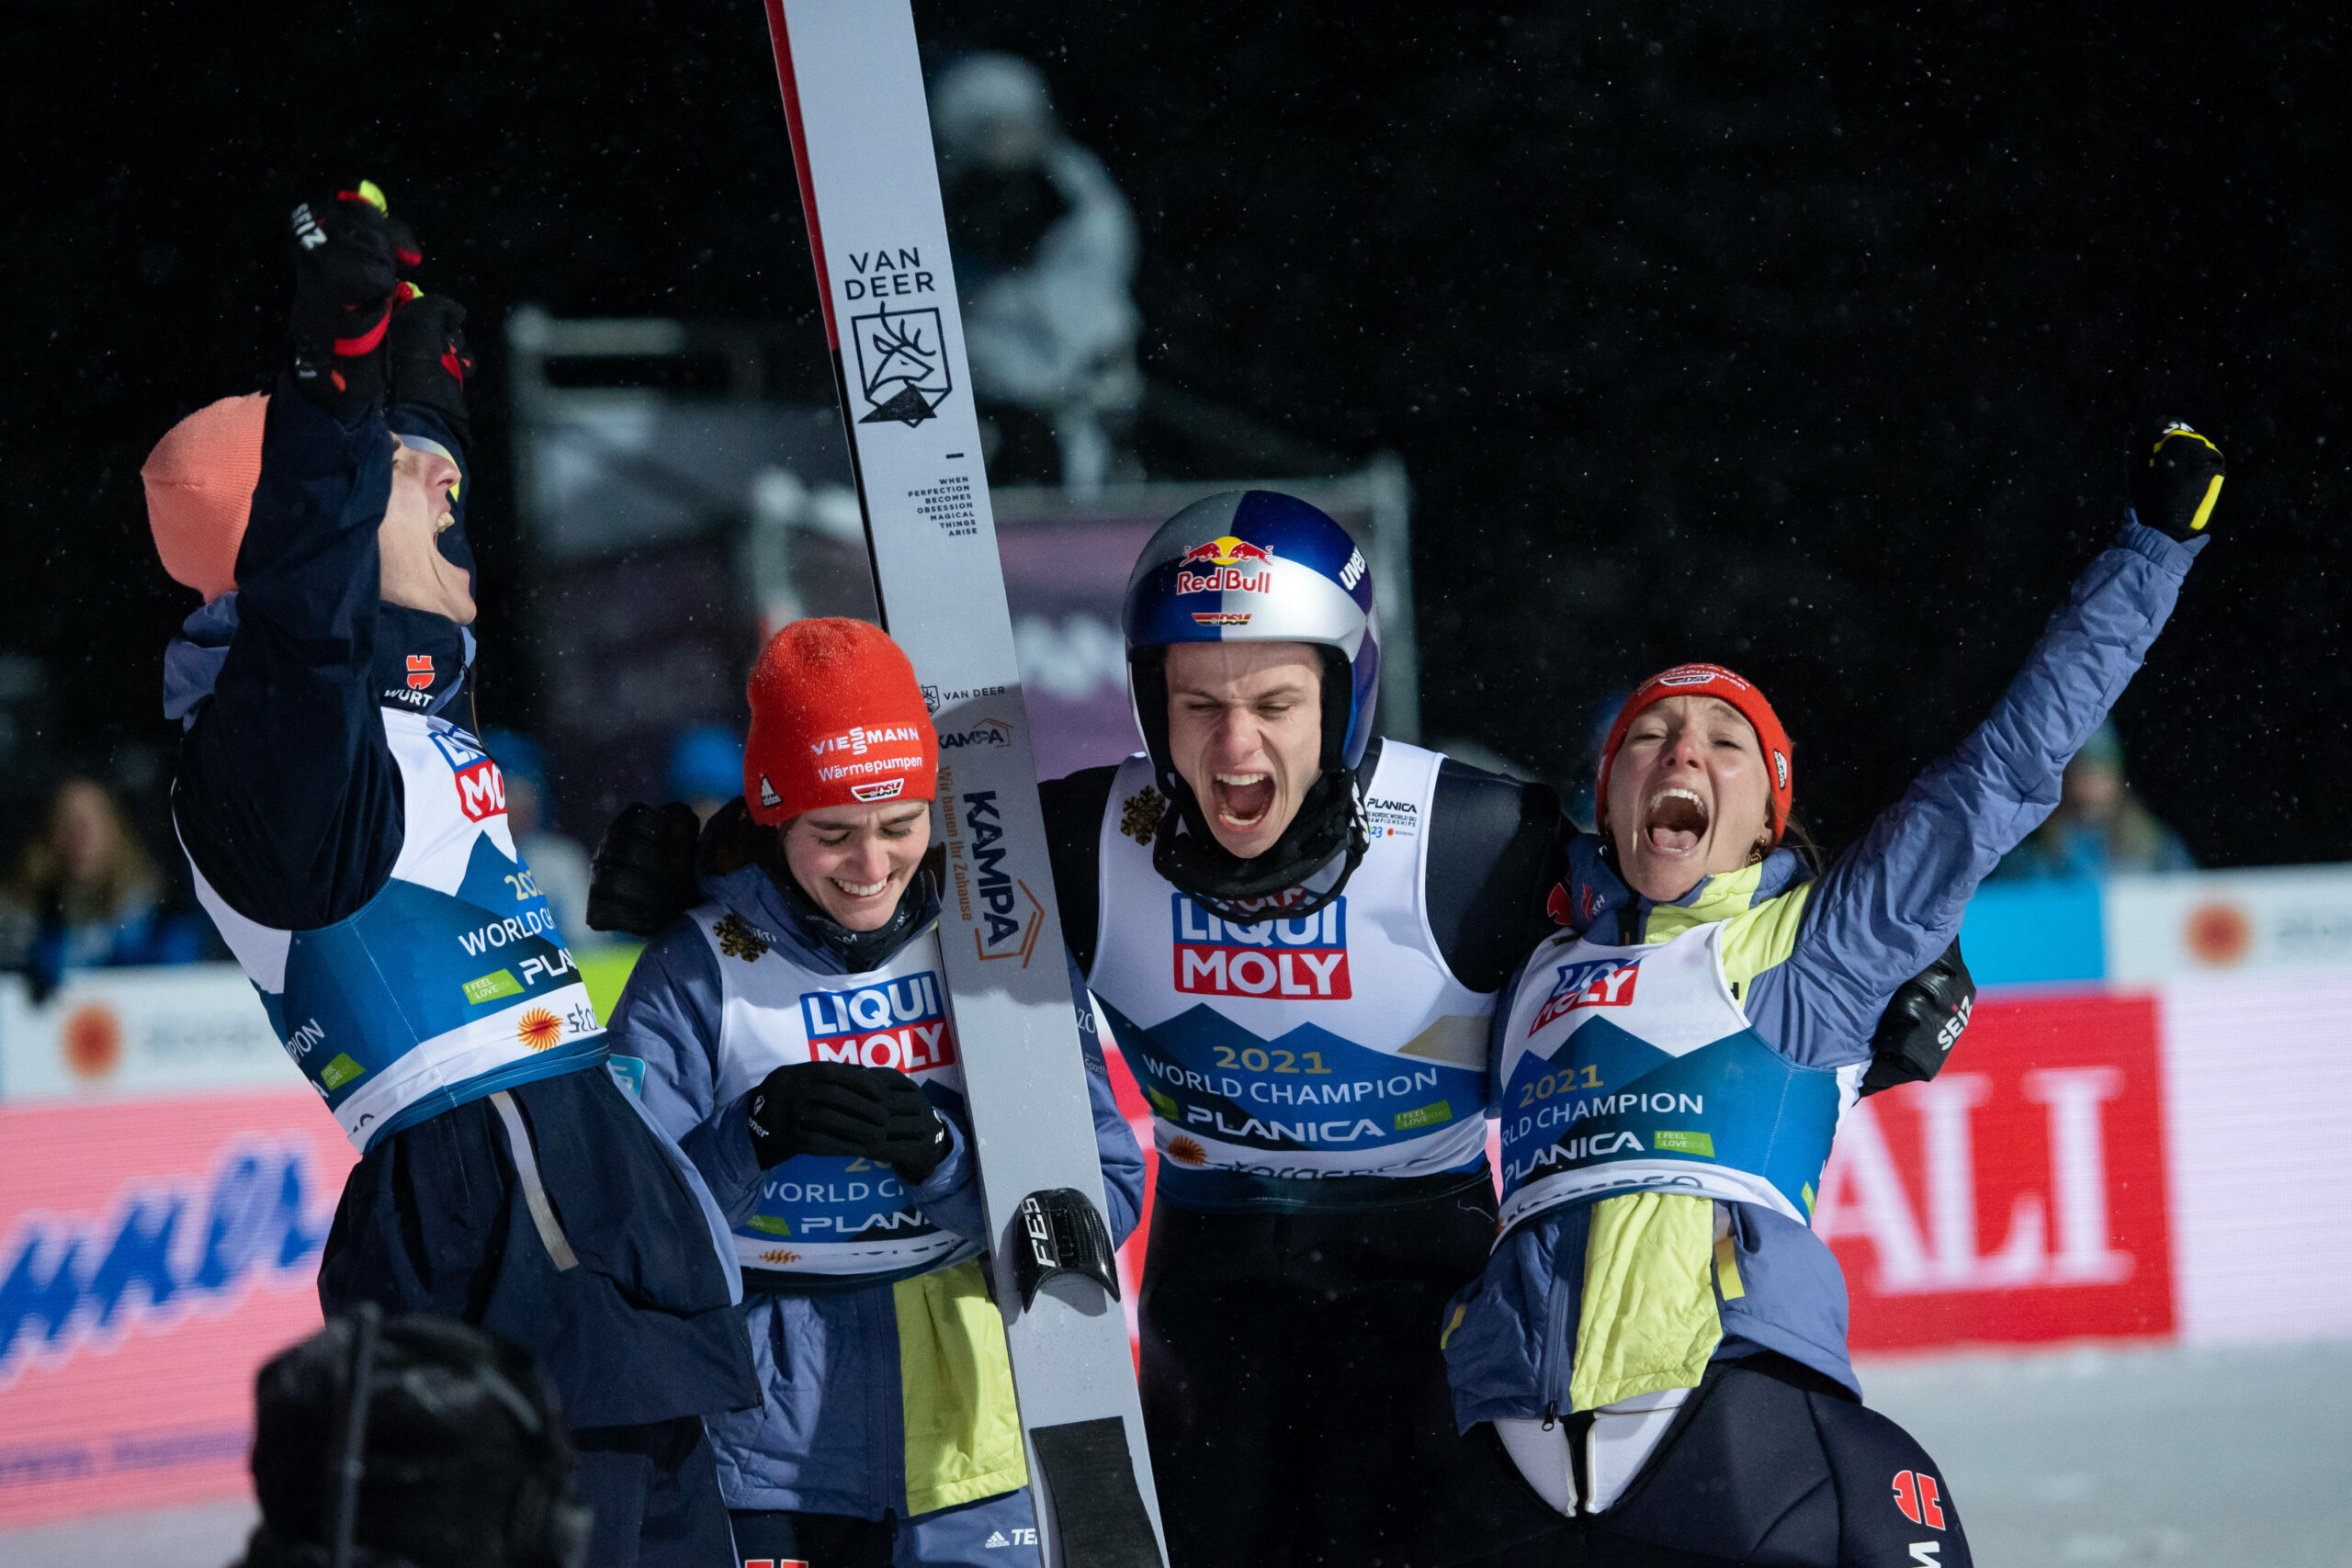 Deutsches Ski-Team jubelt über WM-Gold